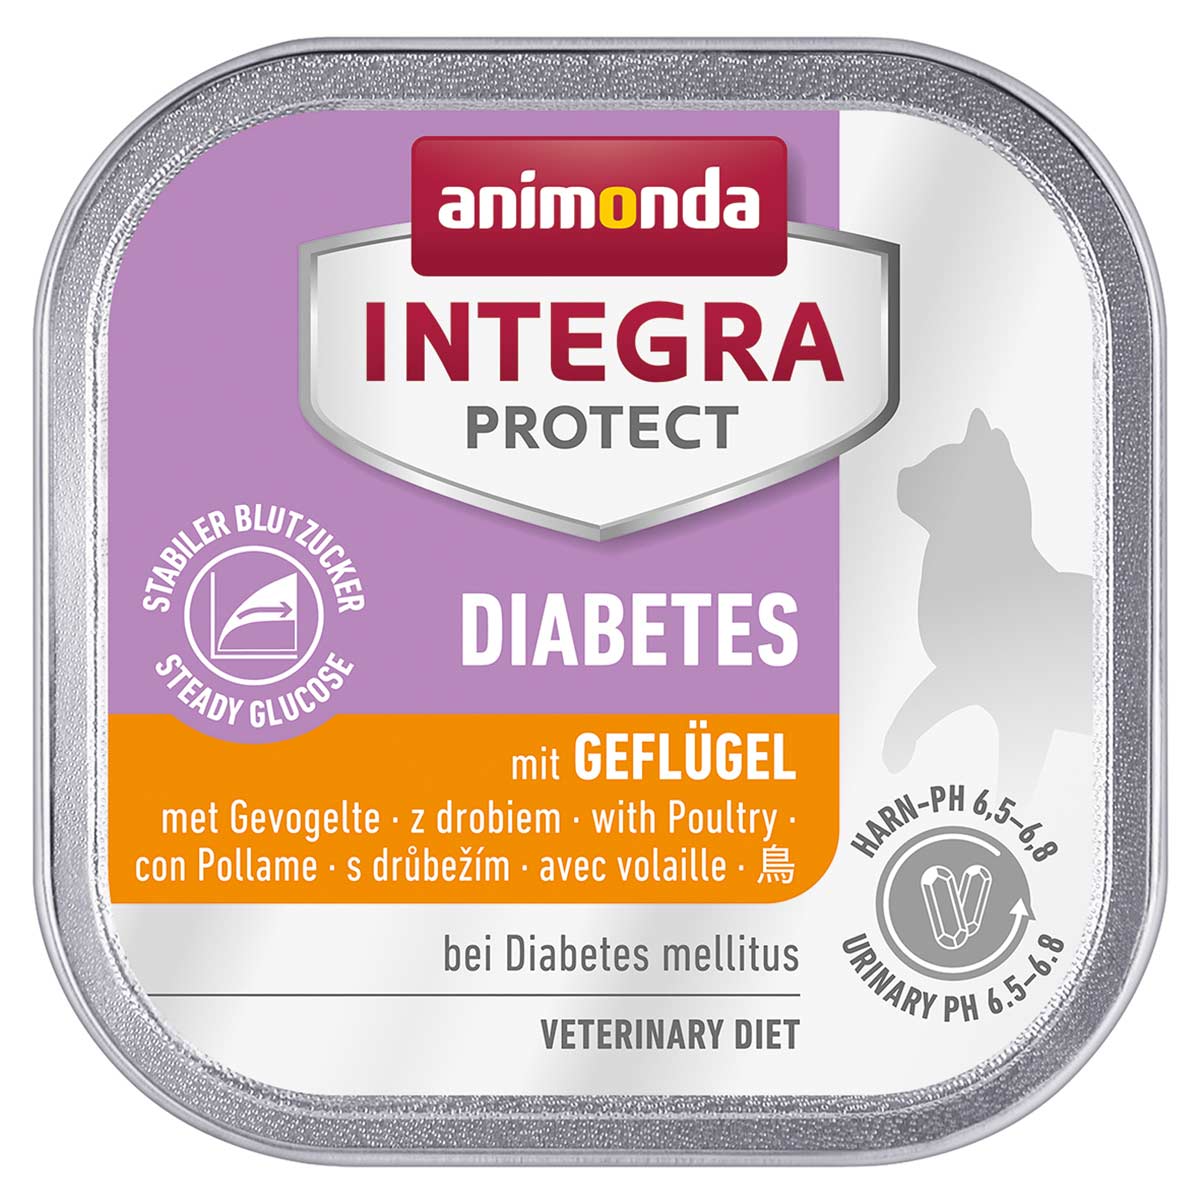 animonda INTEGRA PROTECT Diabetes mit Geflügel 32x100g von animonda Integra Protect